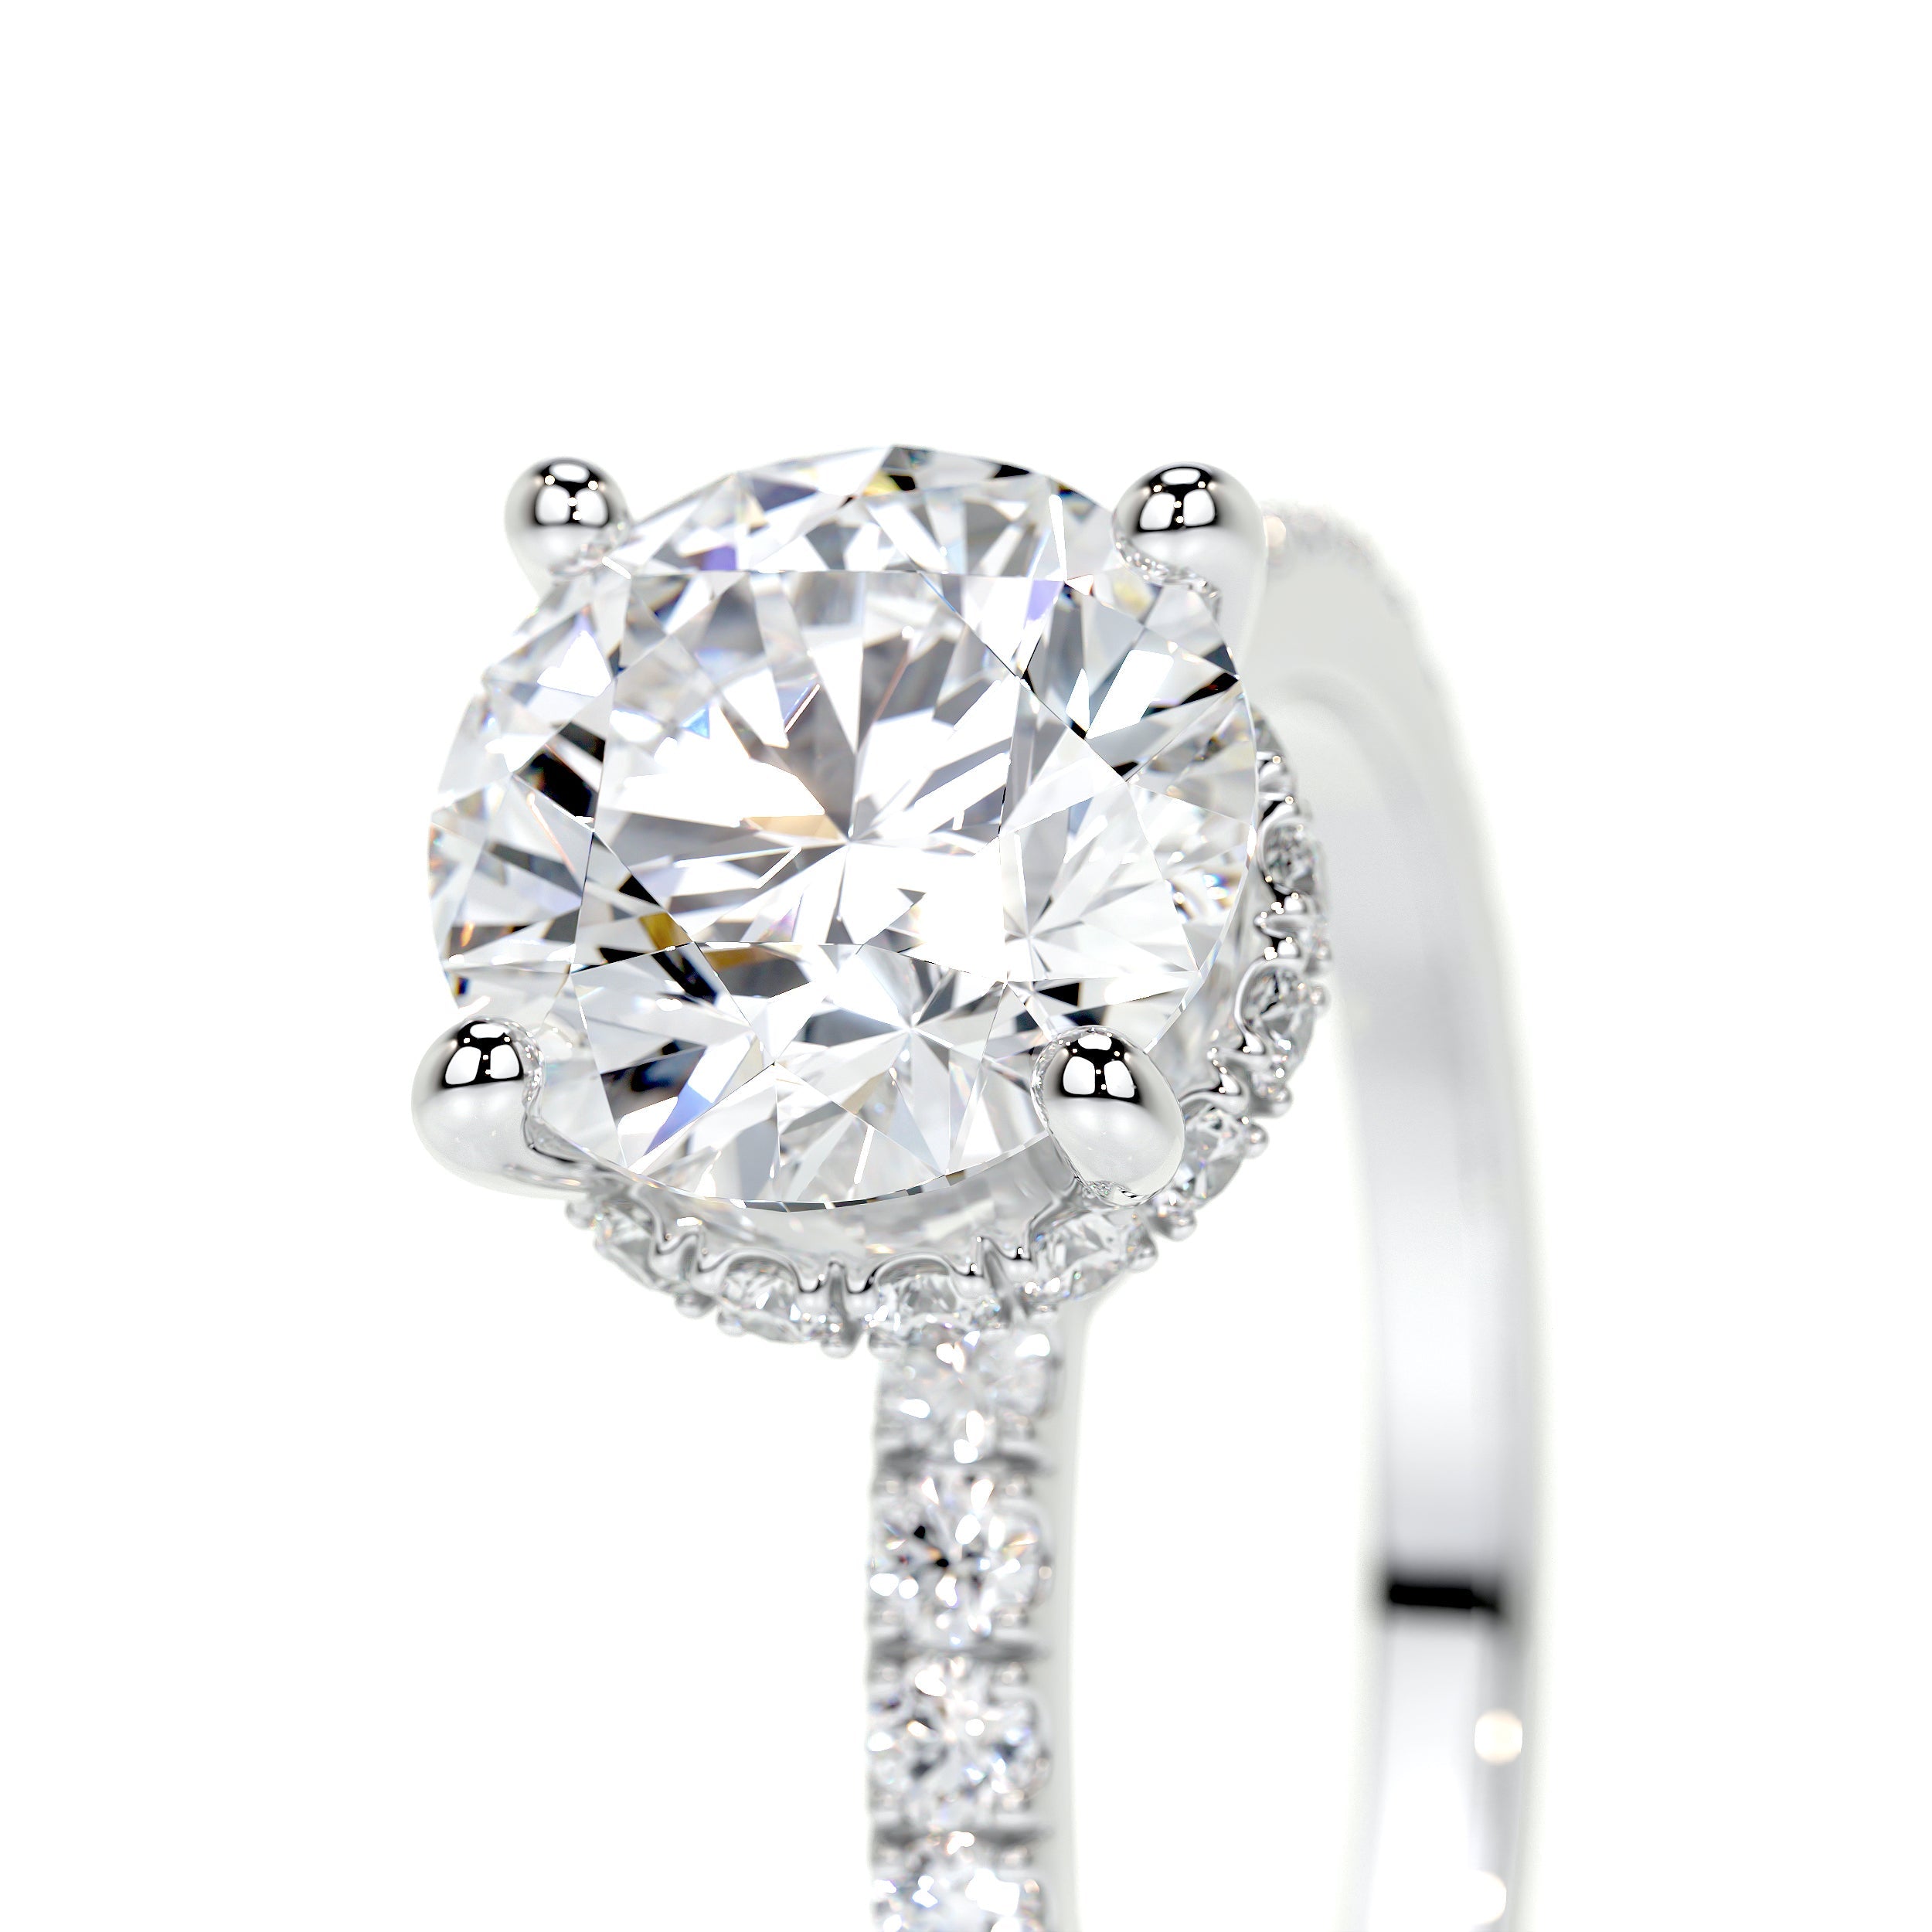 Vivienne Lab Grown Diamond Ring   (2 Carat) -18K White Gold